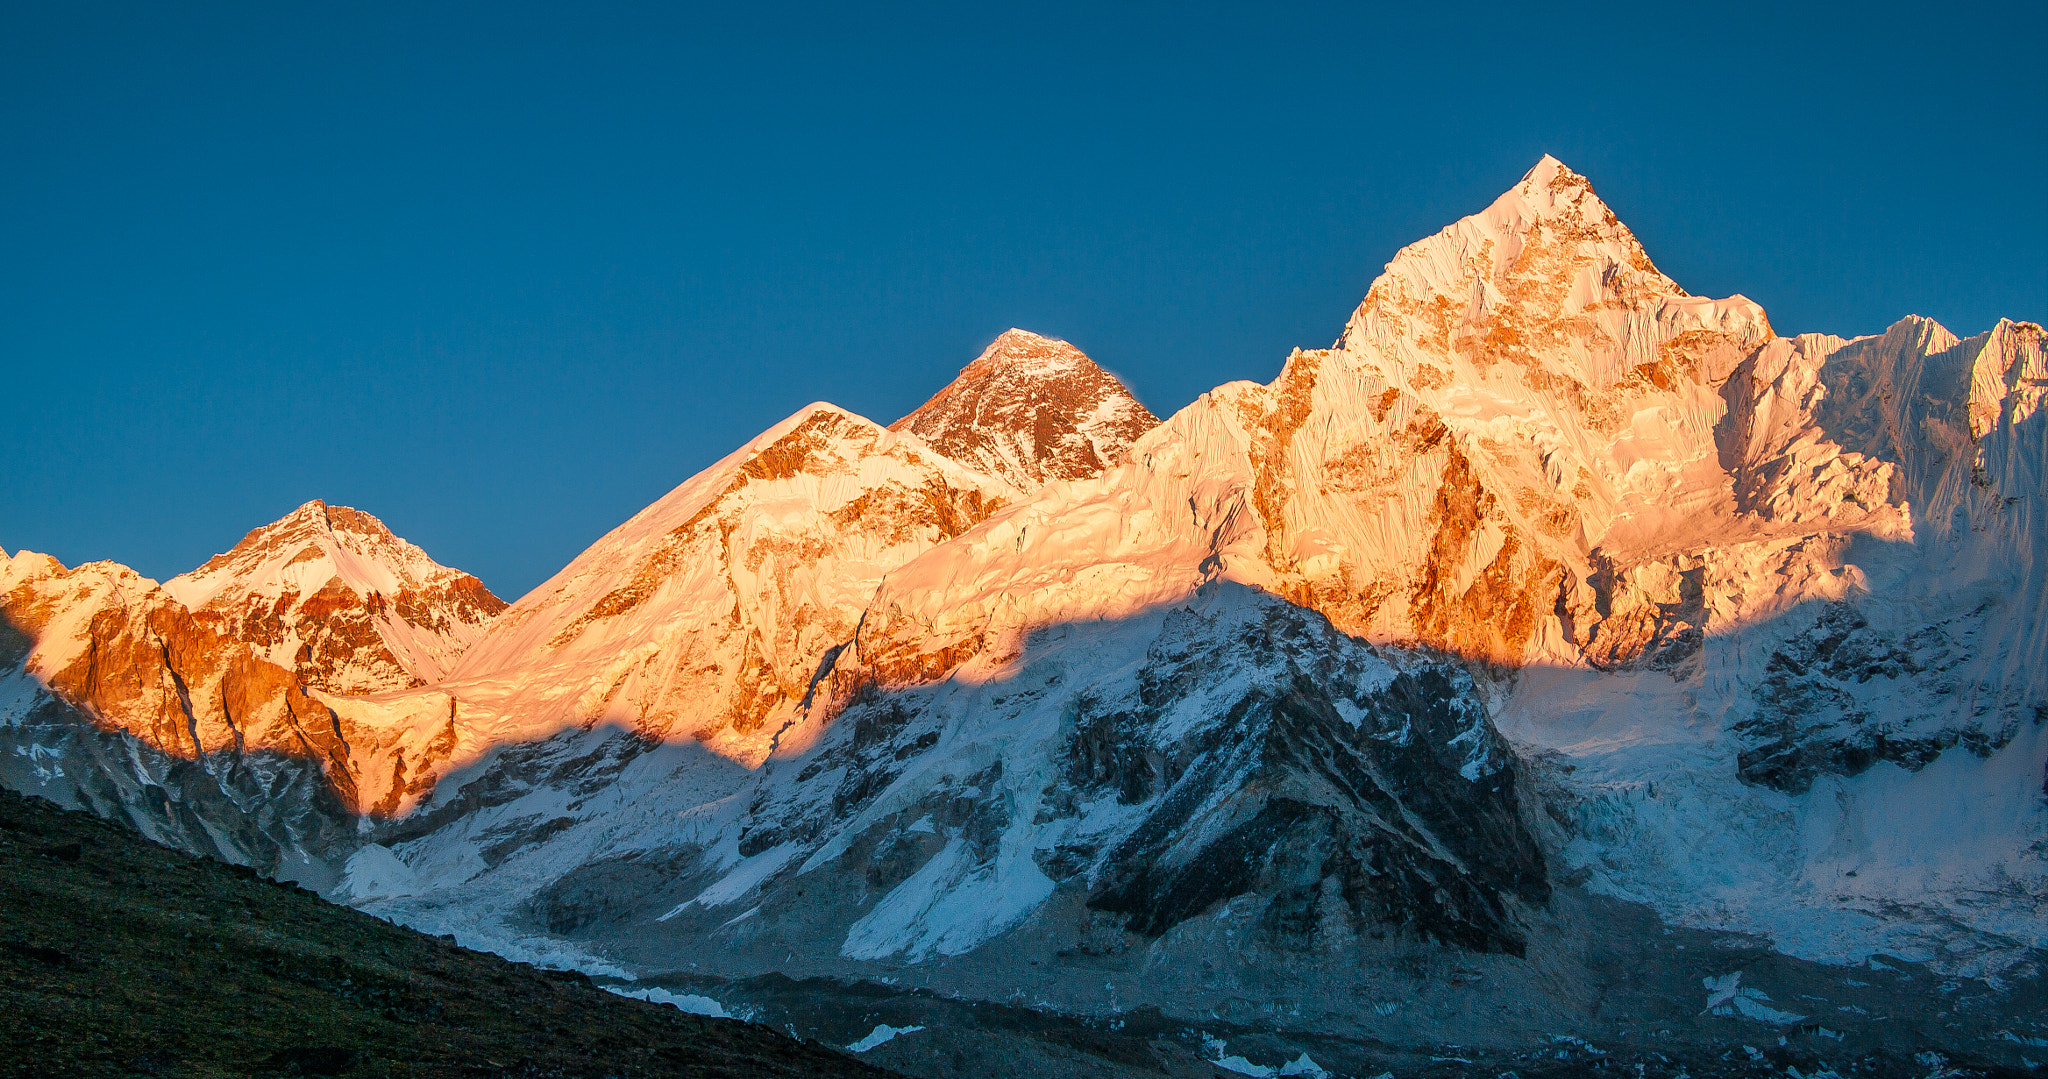 Pentax K-7 sample photo. Himalayan panorama photography